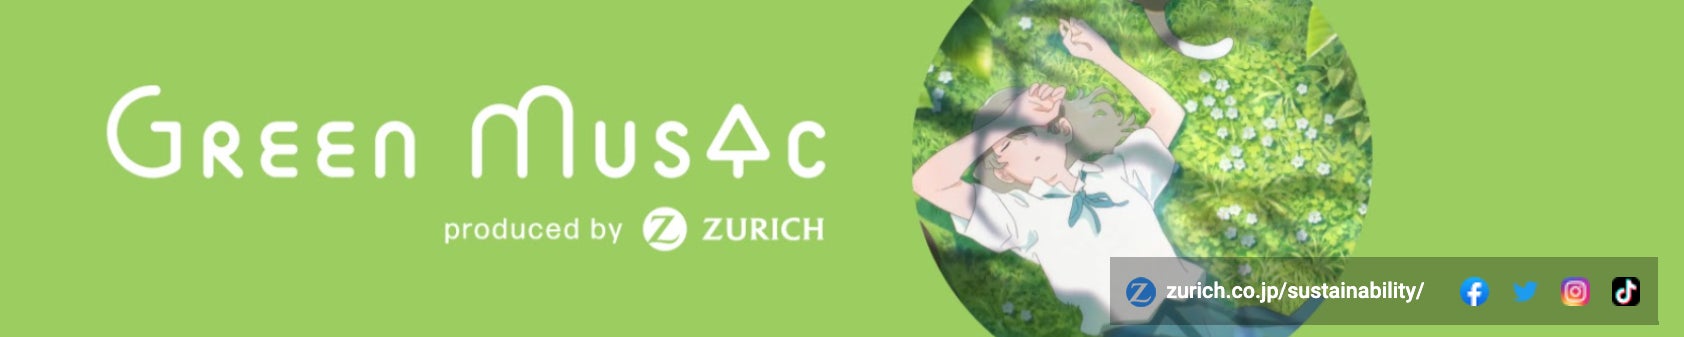 “気候変動の問題をともに考える契機に”YouTubeチャンネル『Green Music produced by Zurich』5月の新コンテンツを公開